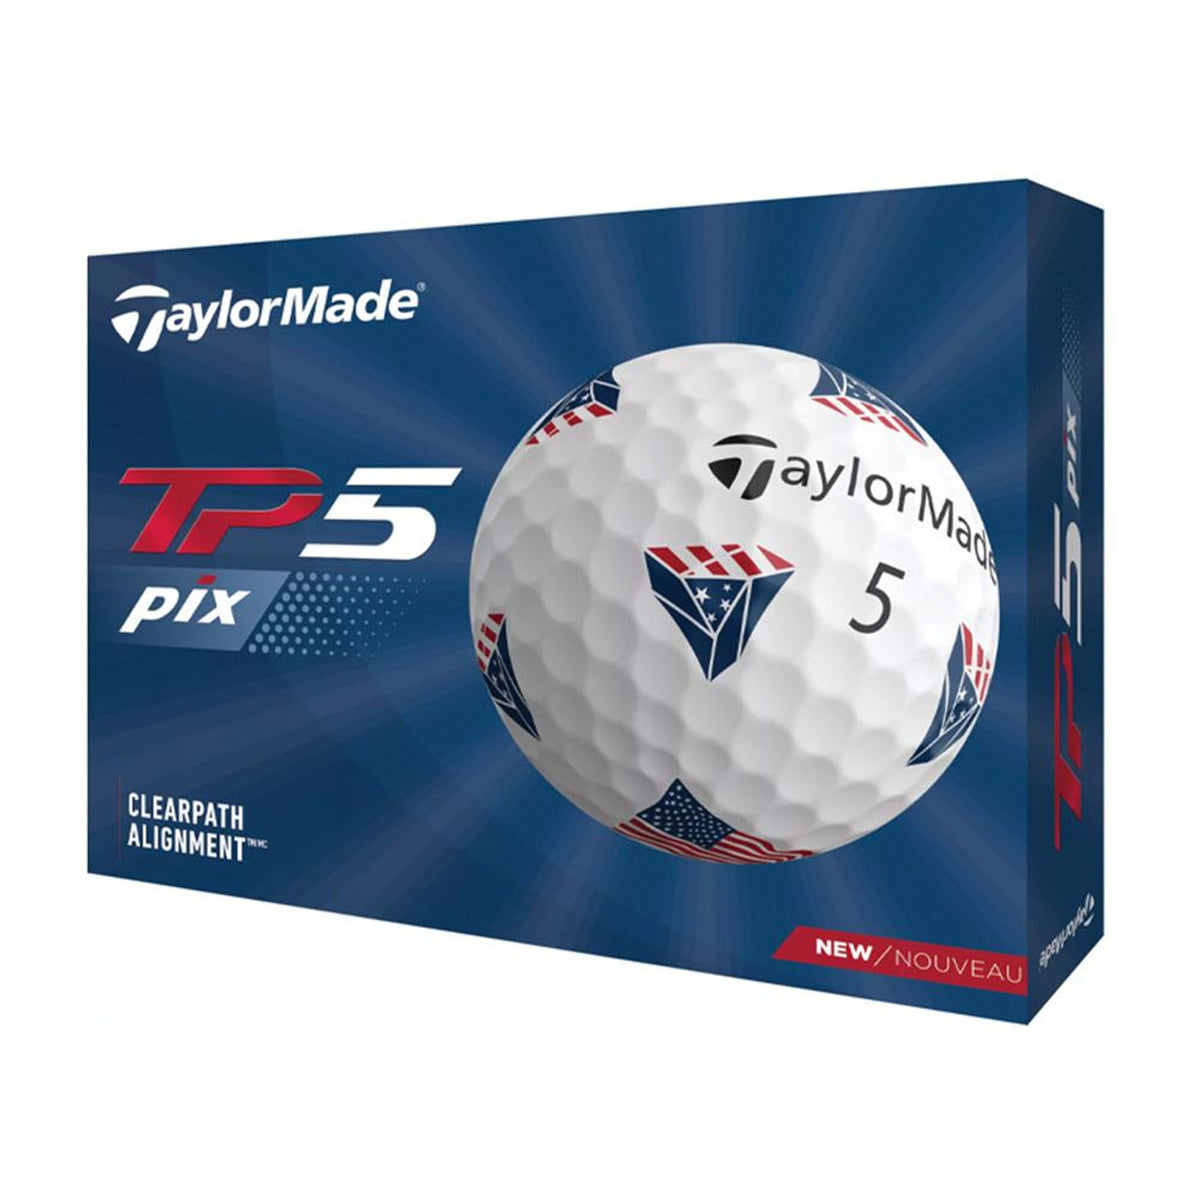 Taylormade TP5 Pix Dozen Golf Balls